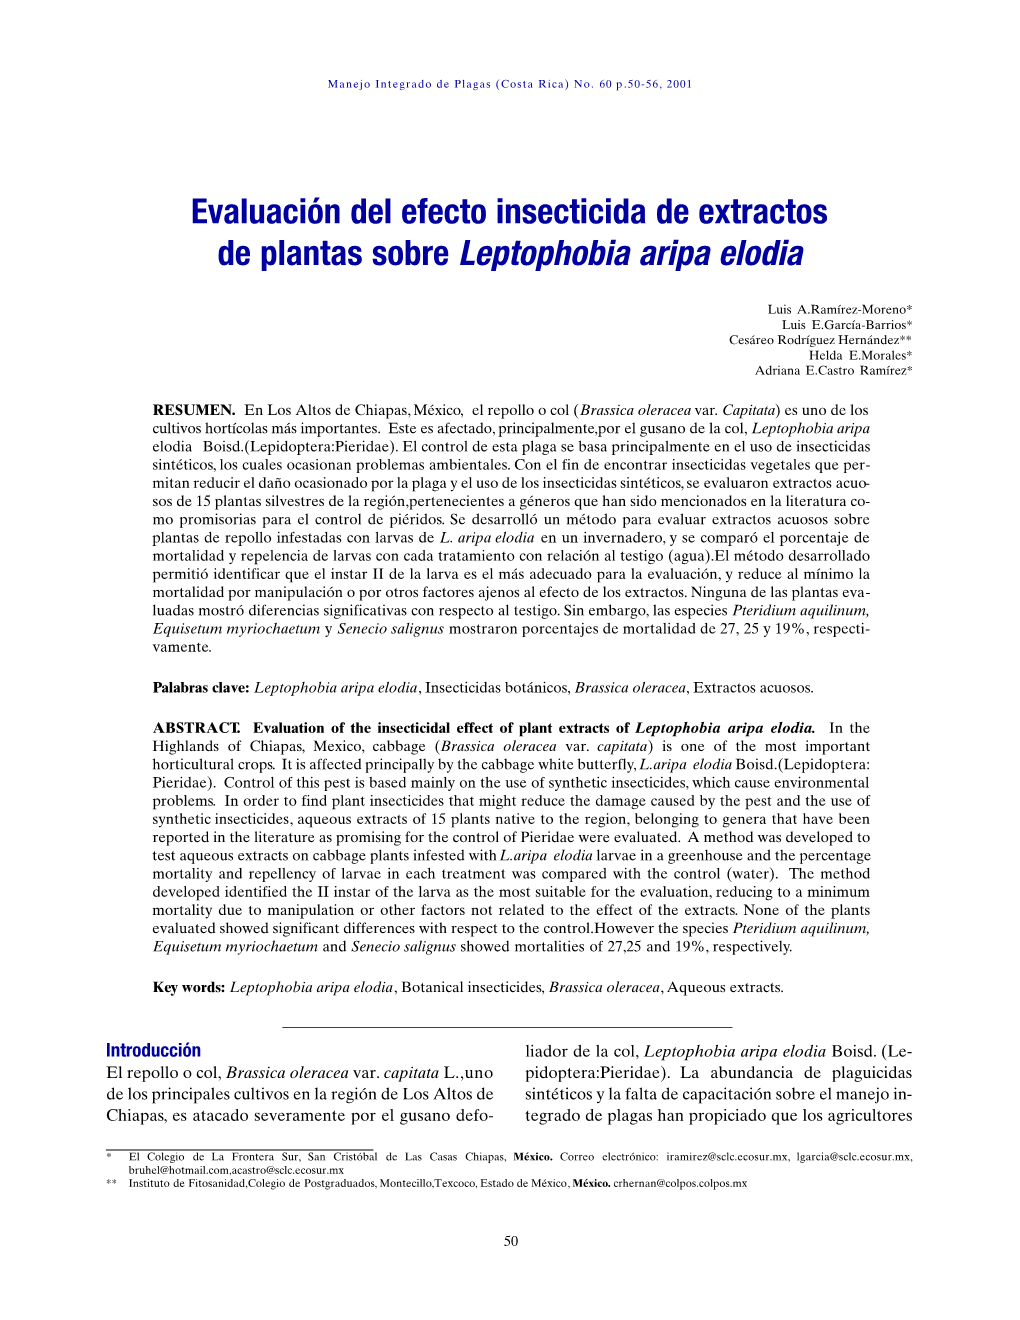 Evaluación Del Efecto Insecticida De Extractos De Plantas Sobre Leptophobia Aripa Elodia